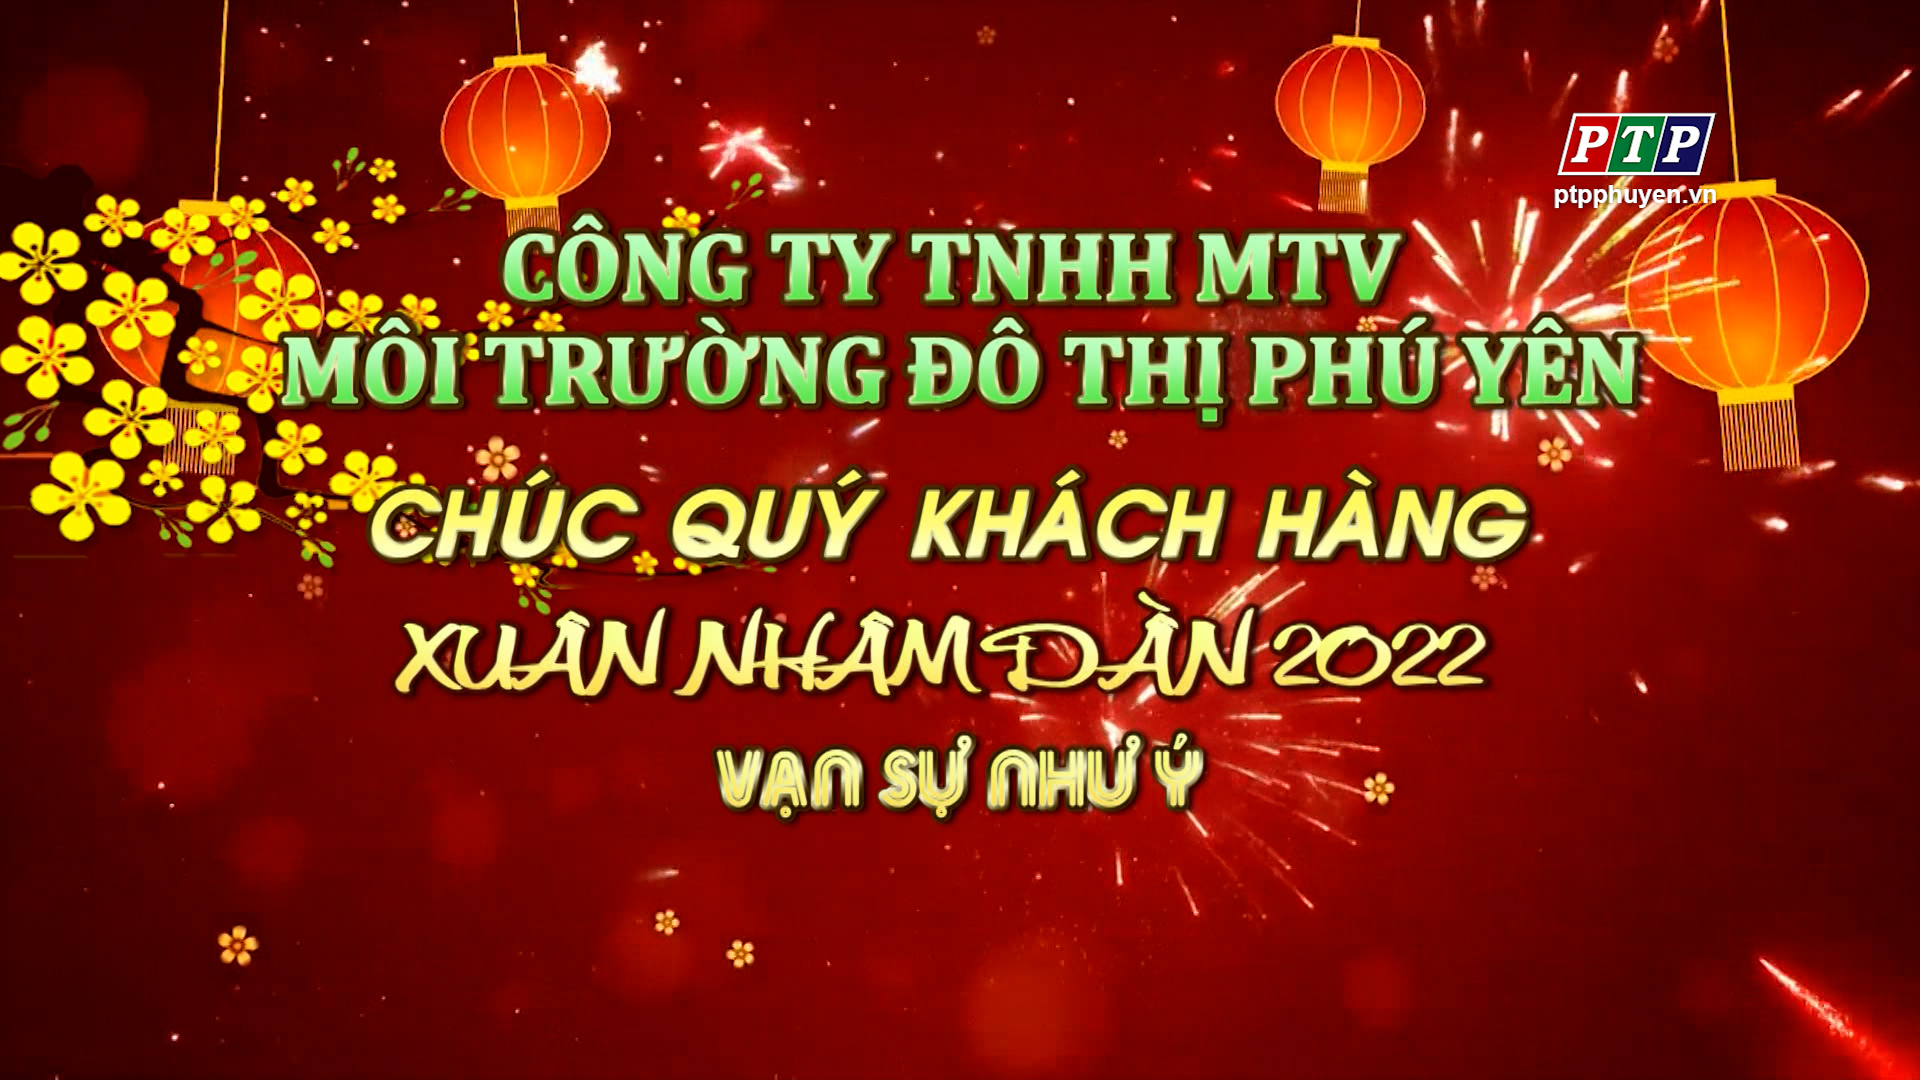 Cty TNHH MTV Môi Trường Đô Thị Phú Yên Chúc Mừng Năm Mới